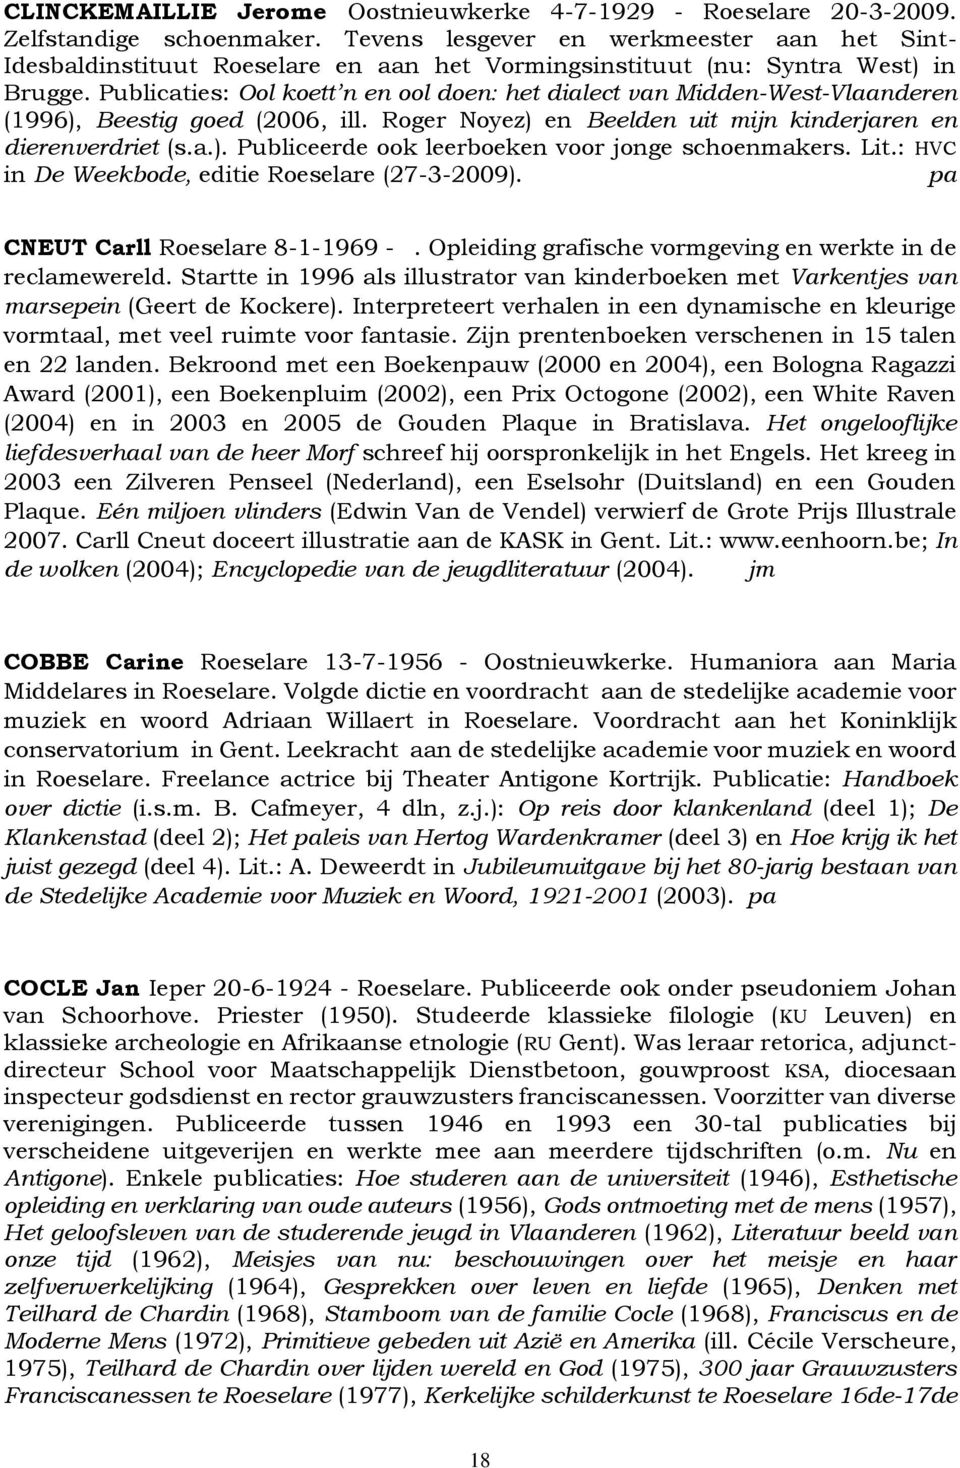 Publicaties: Ool koett n en ool doen: het dialect van Midden-West-Vlaanderen (1996), Beestig goed (2006, ill. Roger Noyez) en Beelden uit mijn kinderjaren en dierenverdriet (s.a.). Publiceerde ook leerboeken voor jonge schoenmakers.